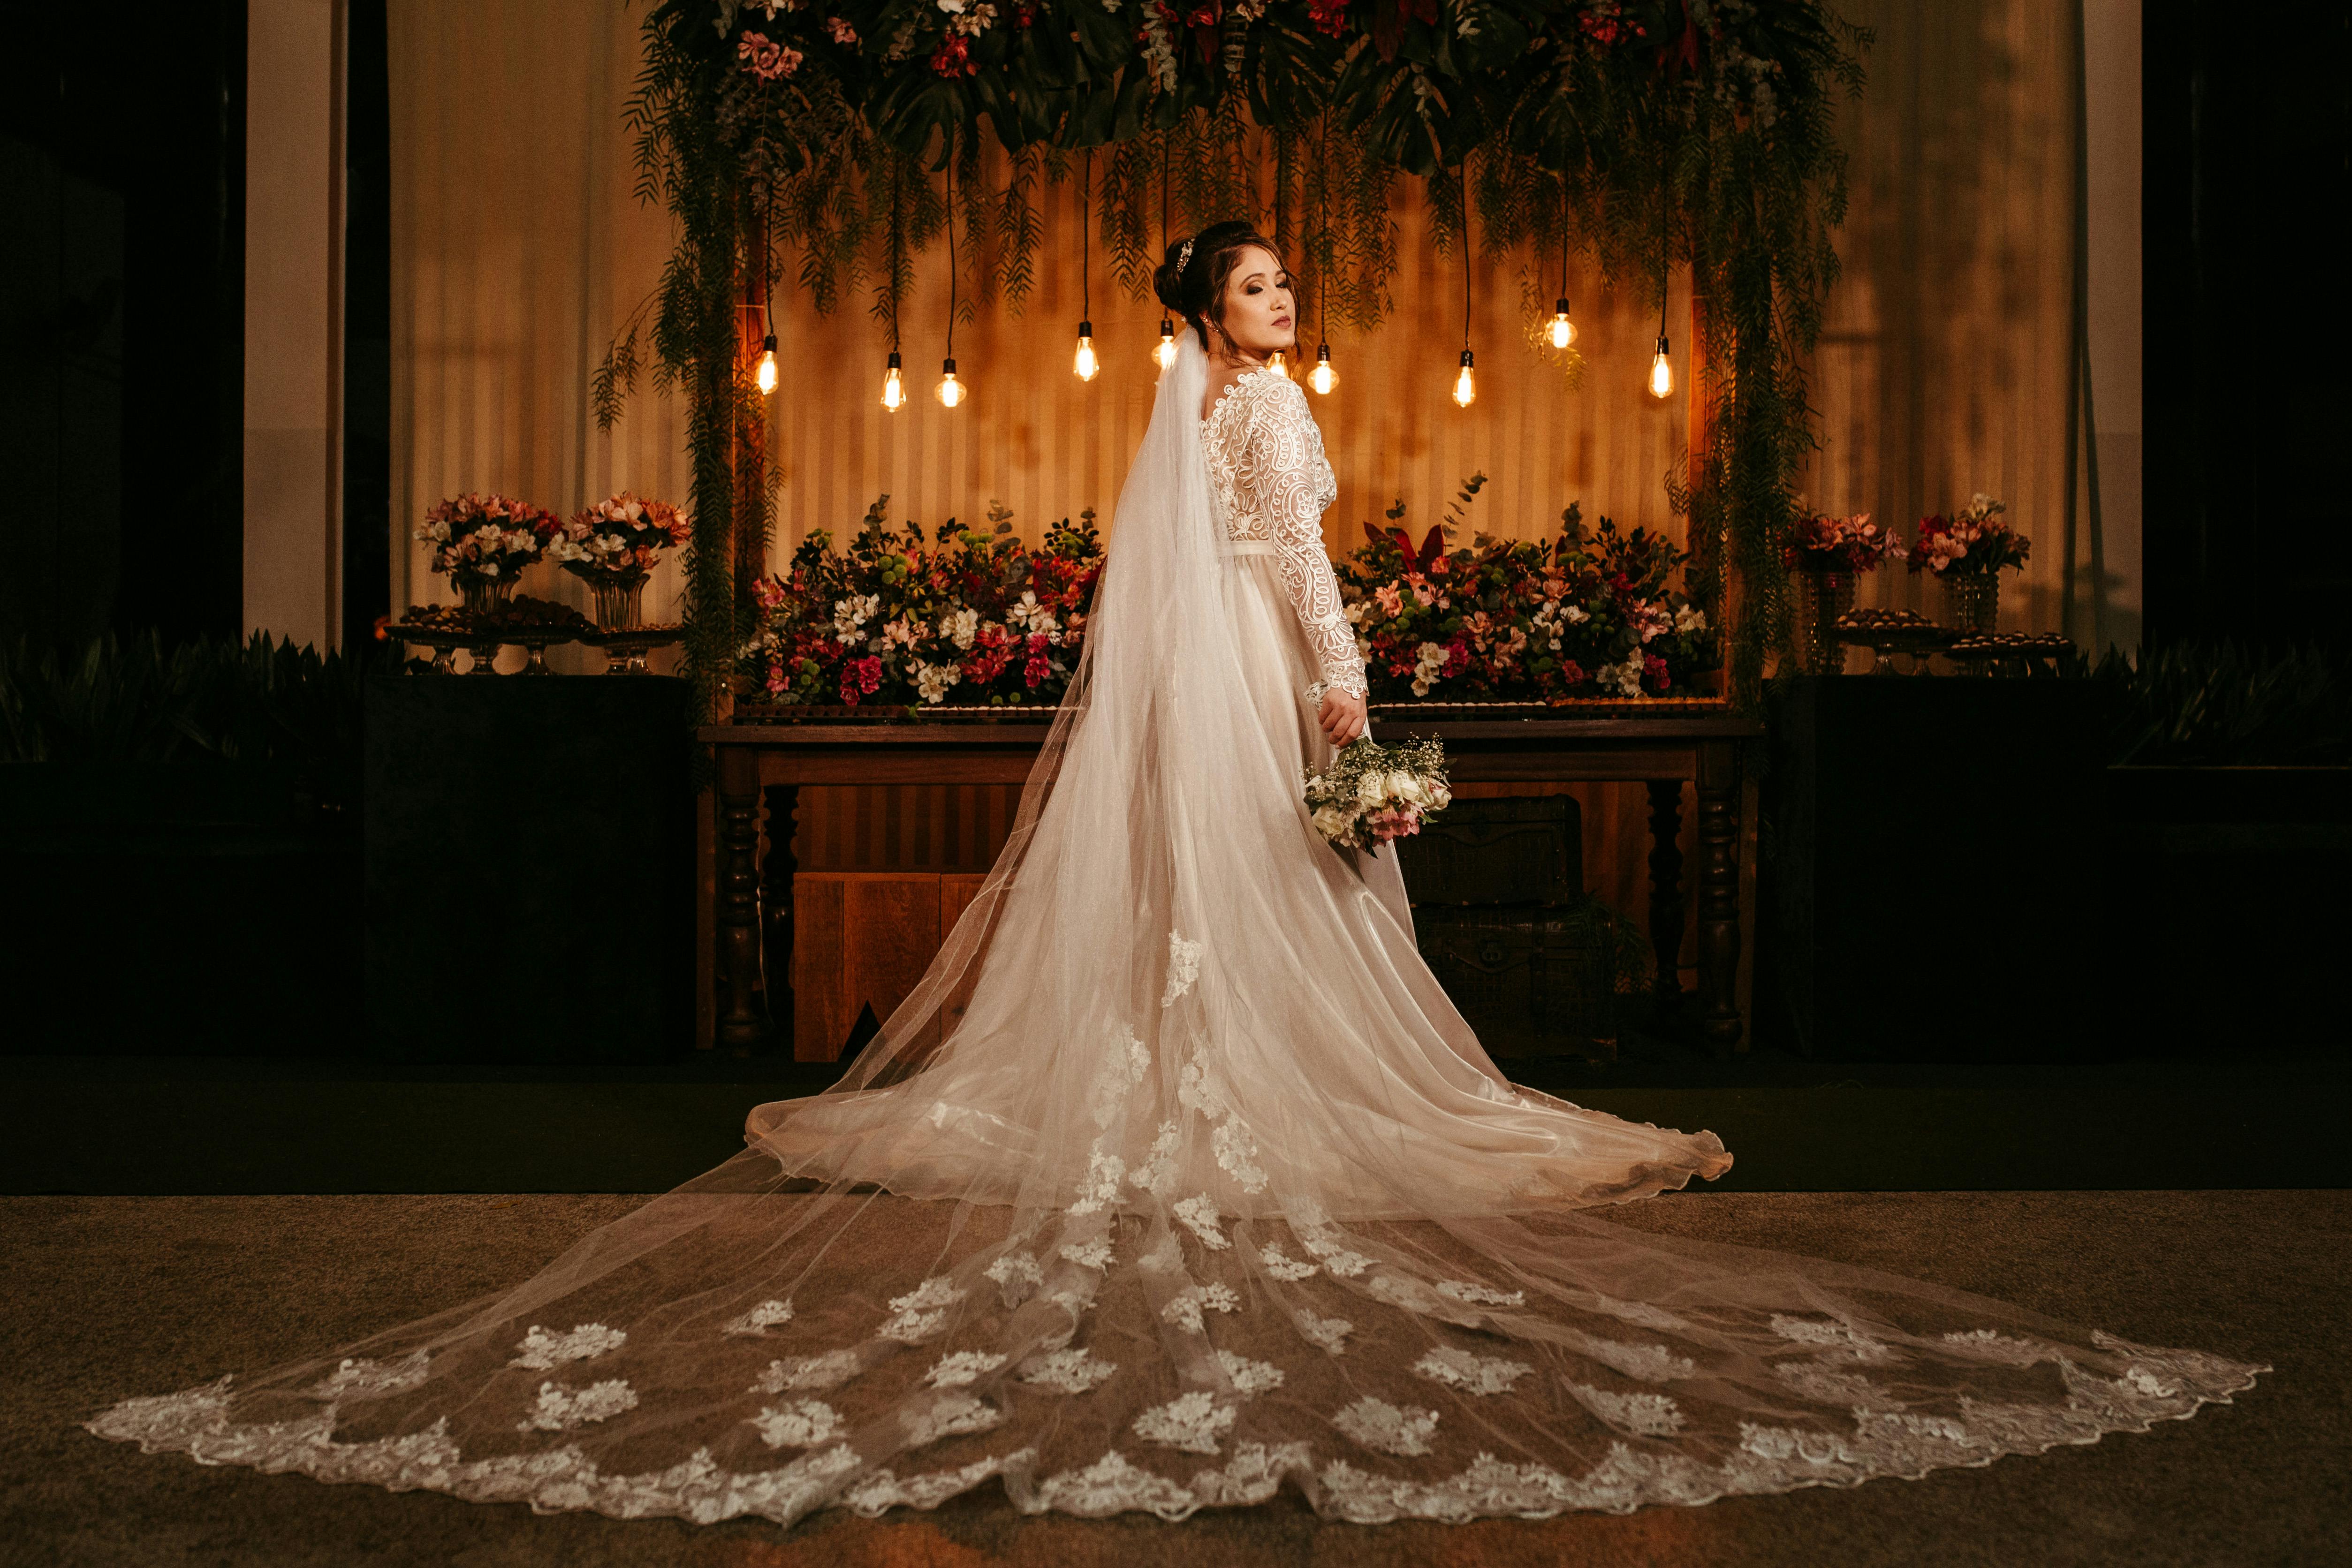 A bride | Source: Pexels